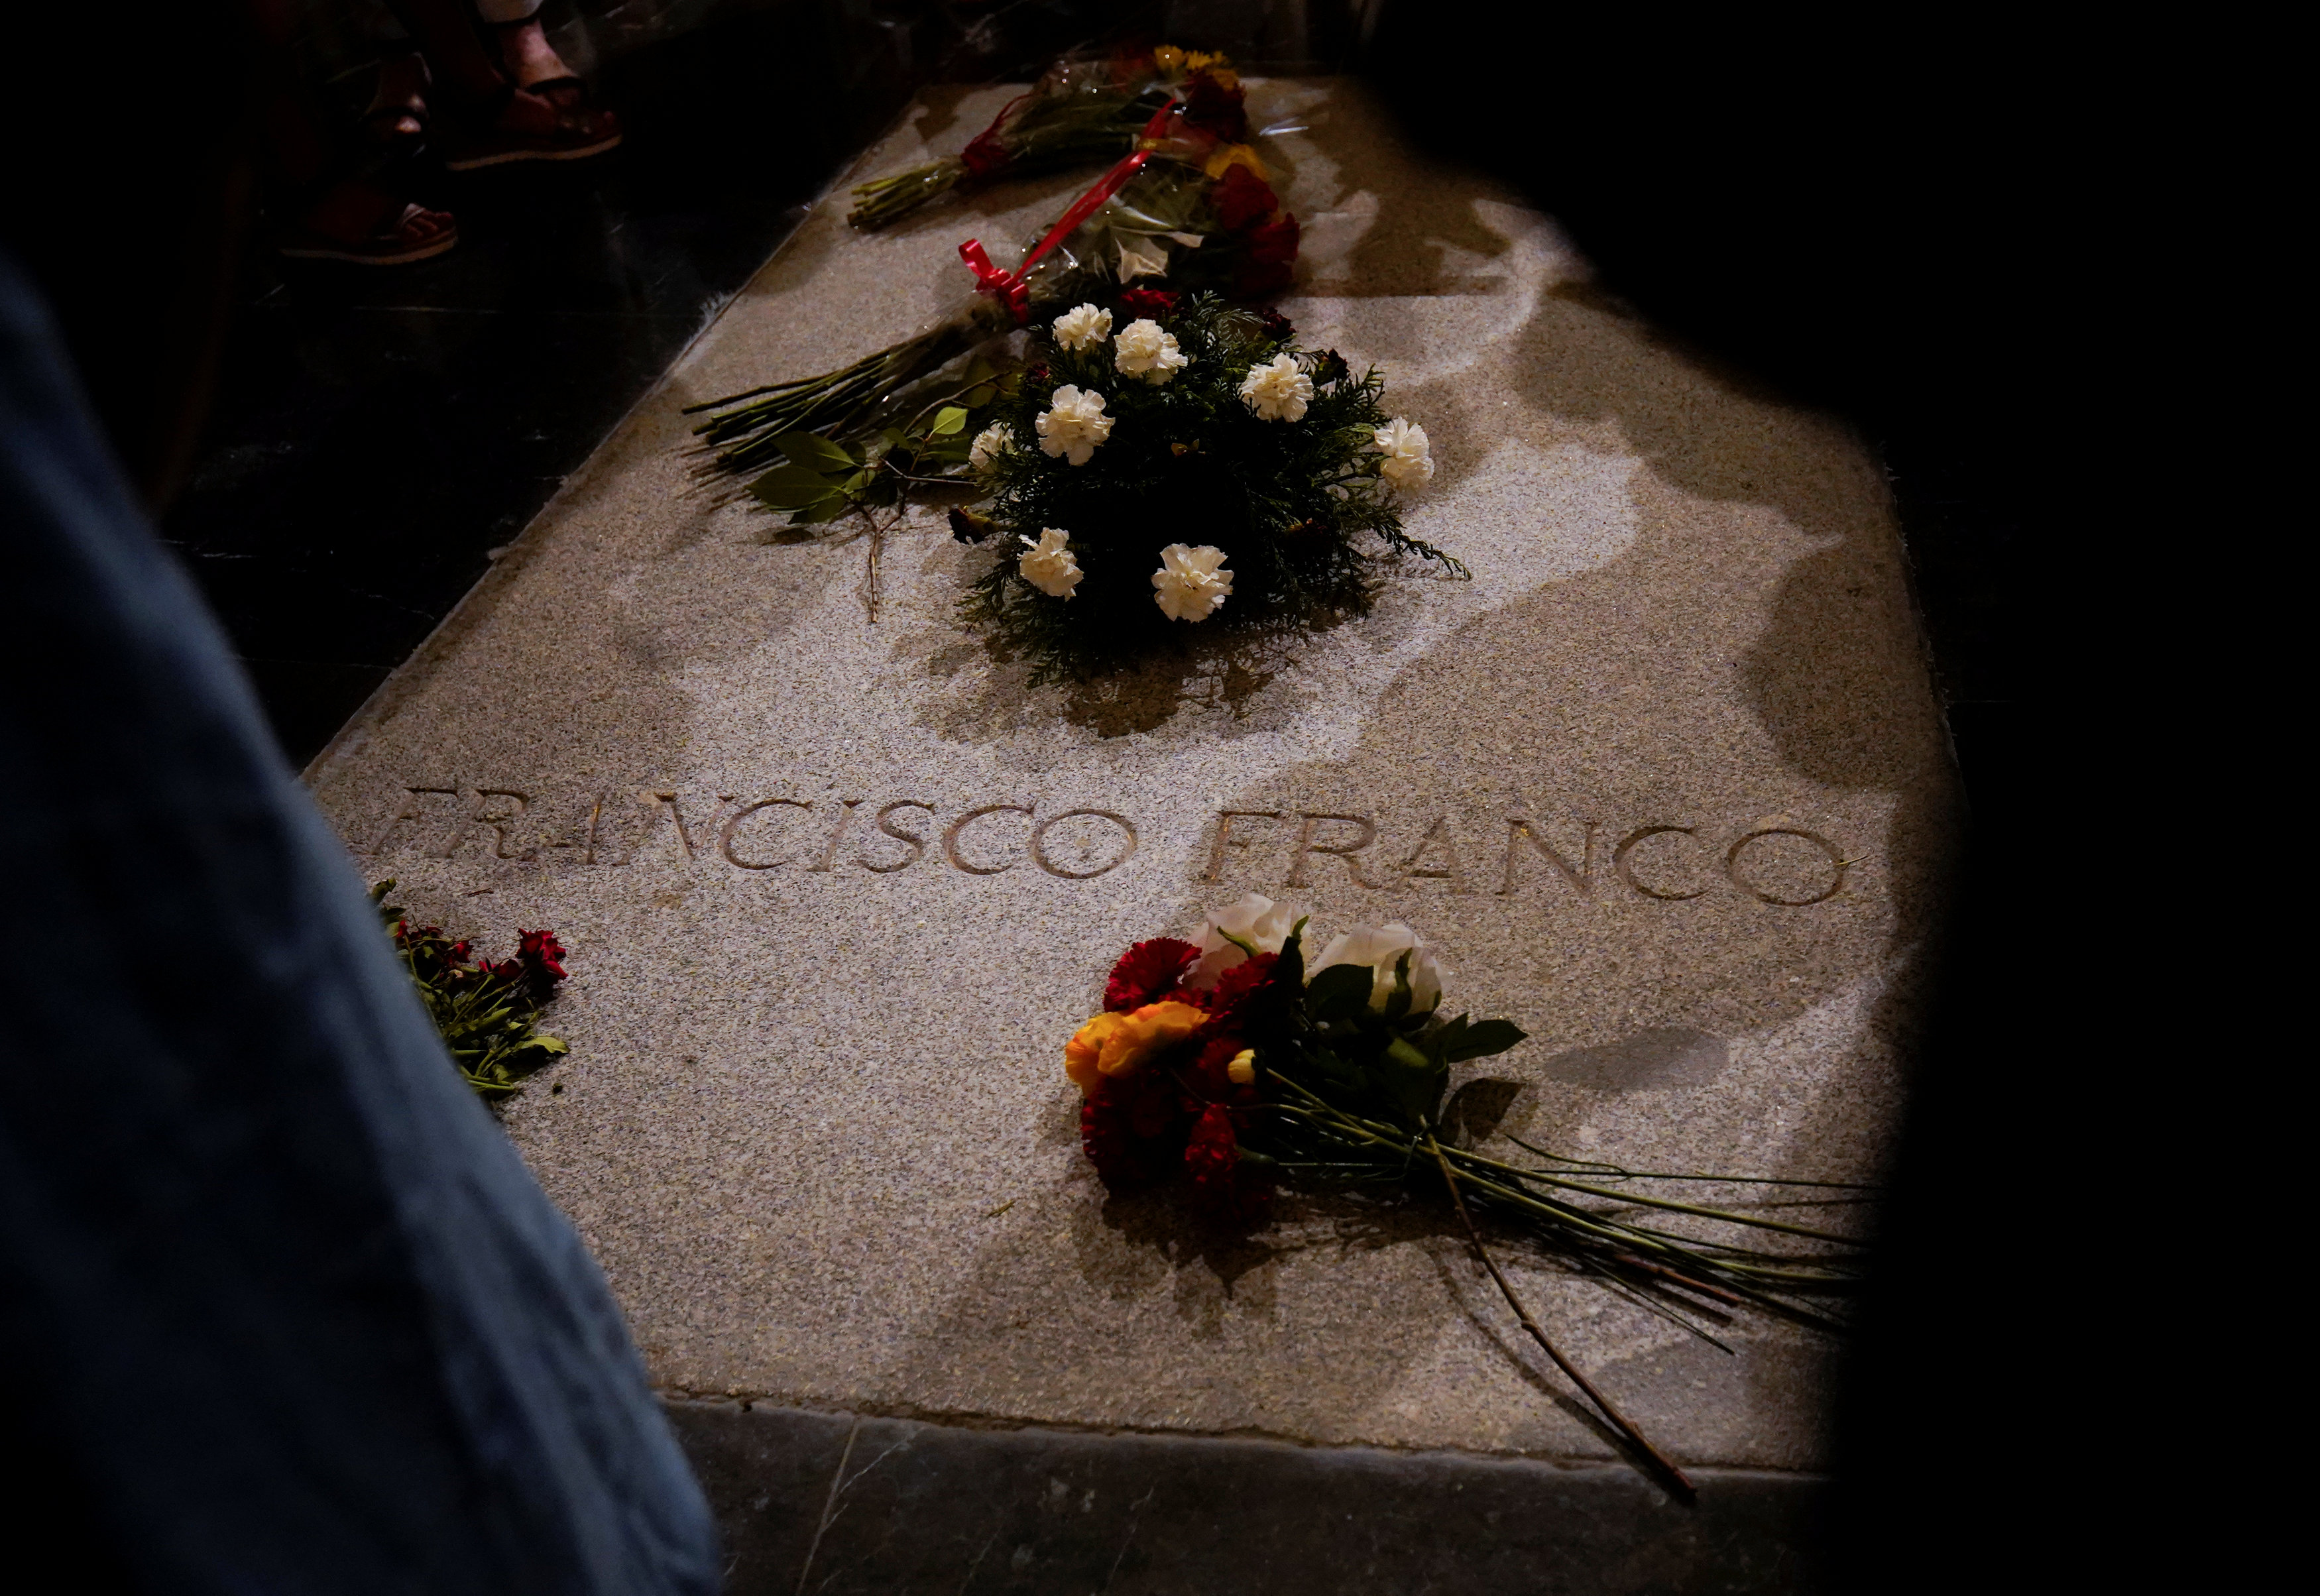 Gobierno español exhumará restos del dictador Franco antes del #25Oct